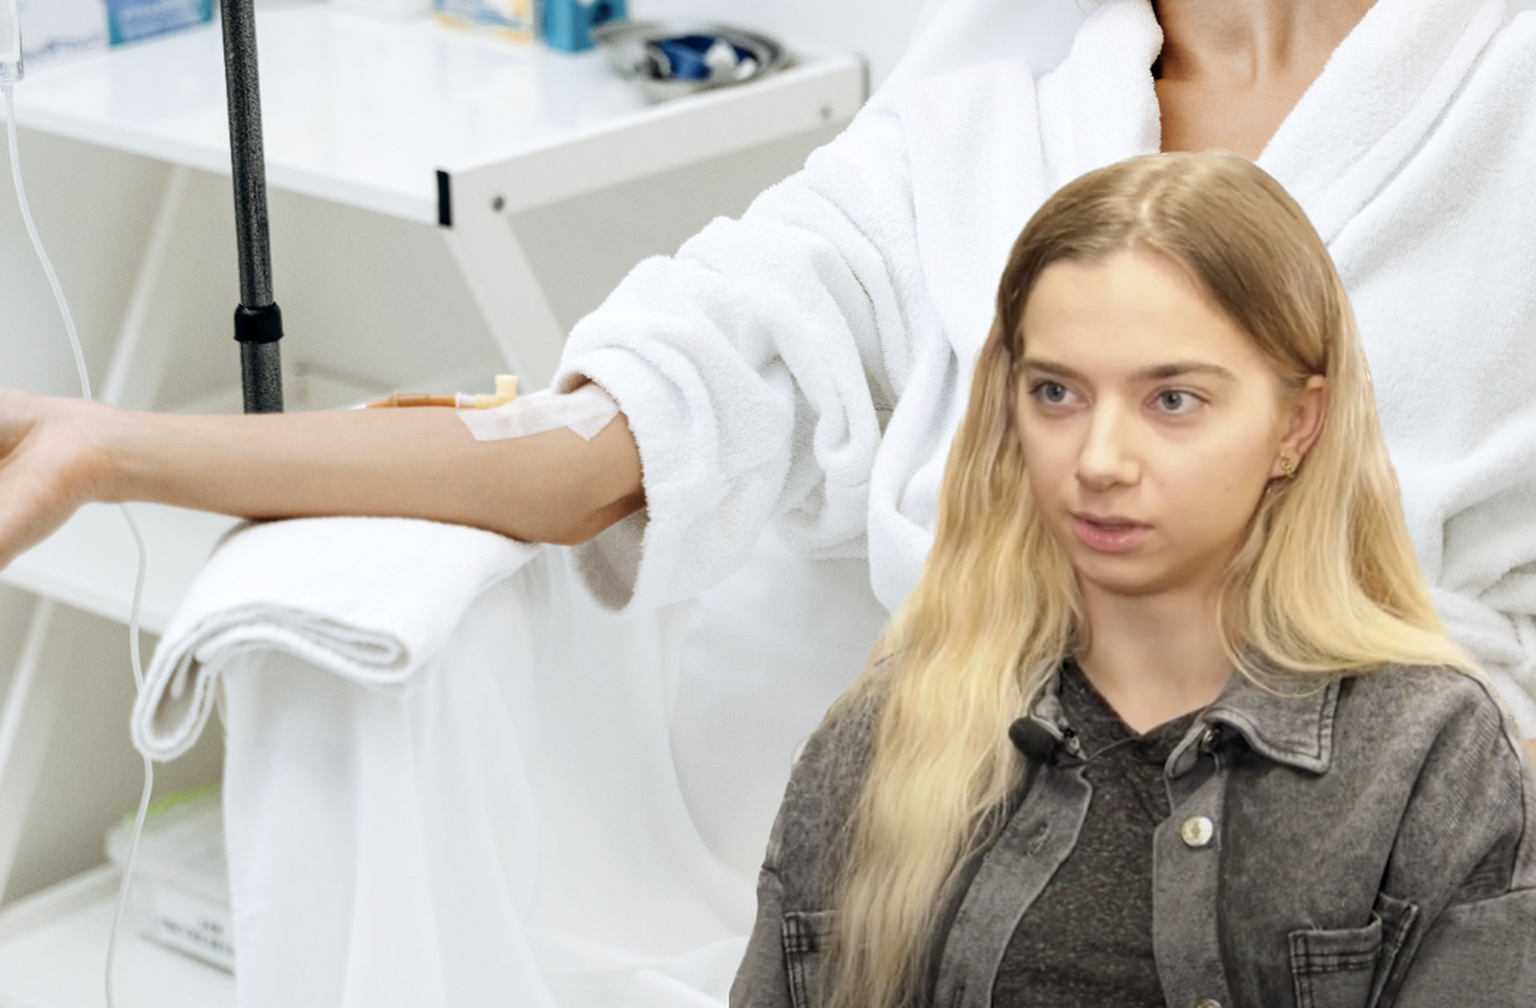 21-летняя Лили учится на первом курсе Таллиннского университета. Летом прошлого года Лили приняла решение, о котором сейчас глубоко сожалеет – решила попробовать популярную среди инфлюенсеров витаминотерапию.